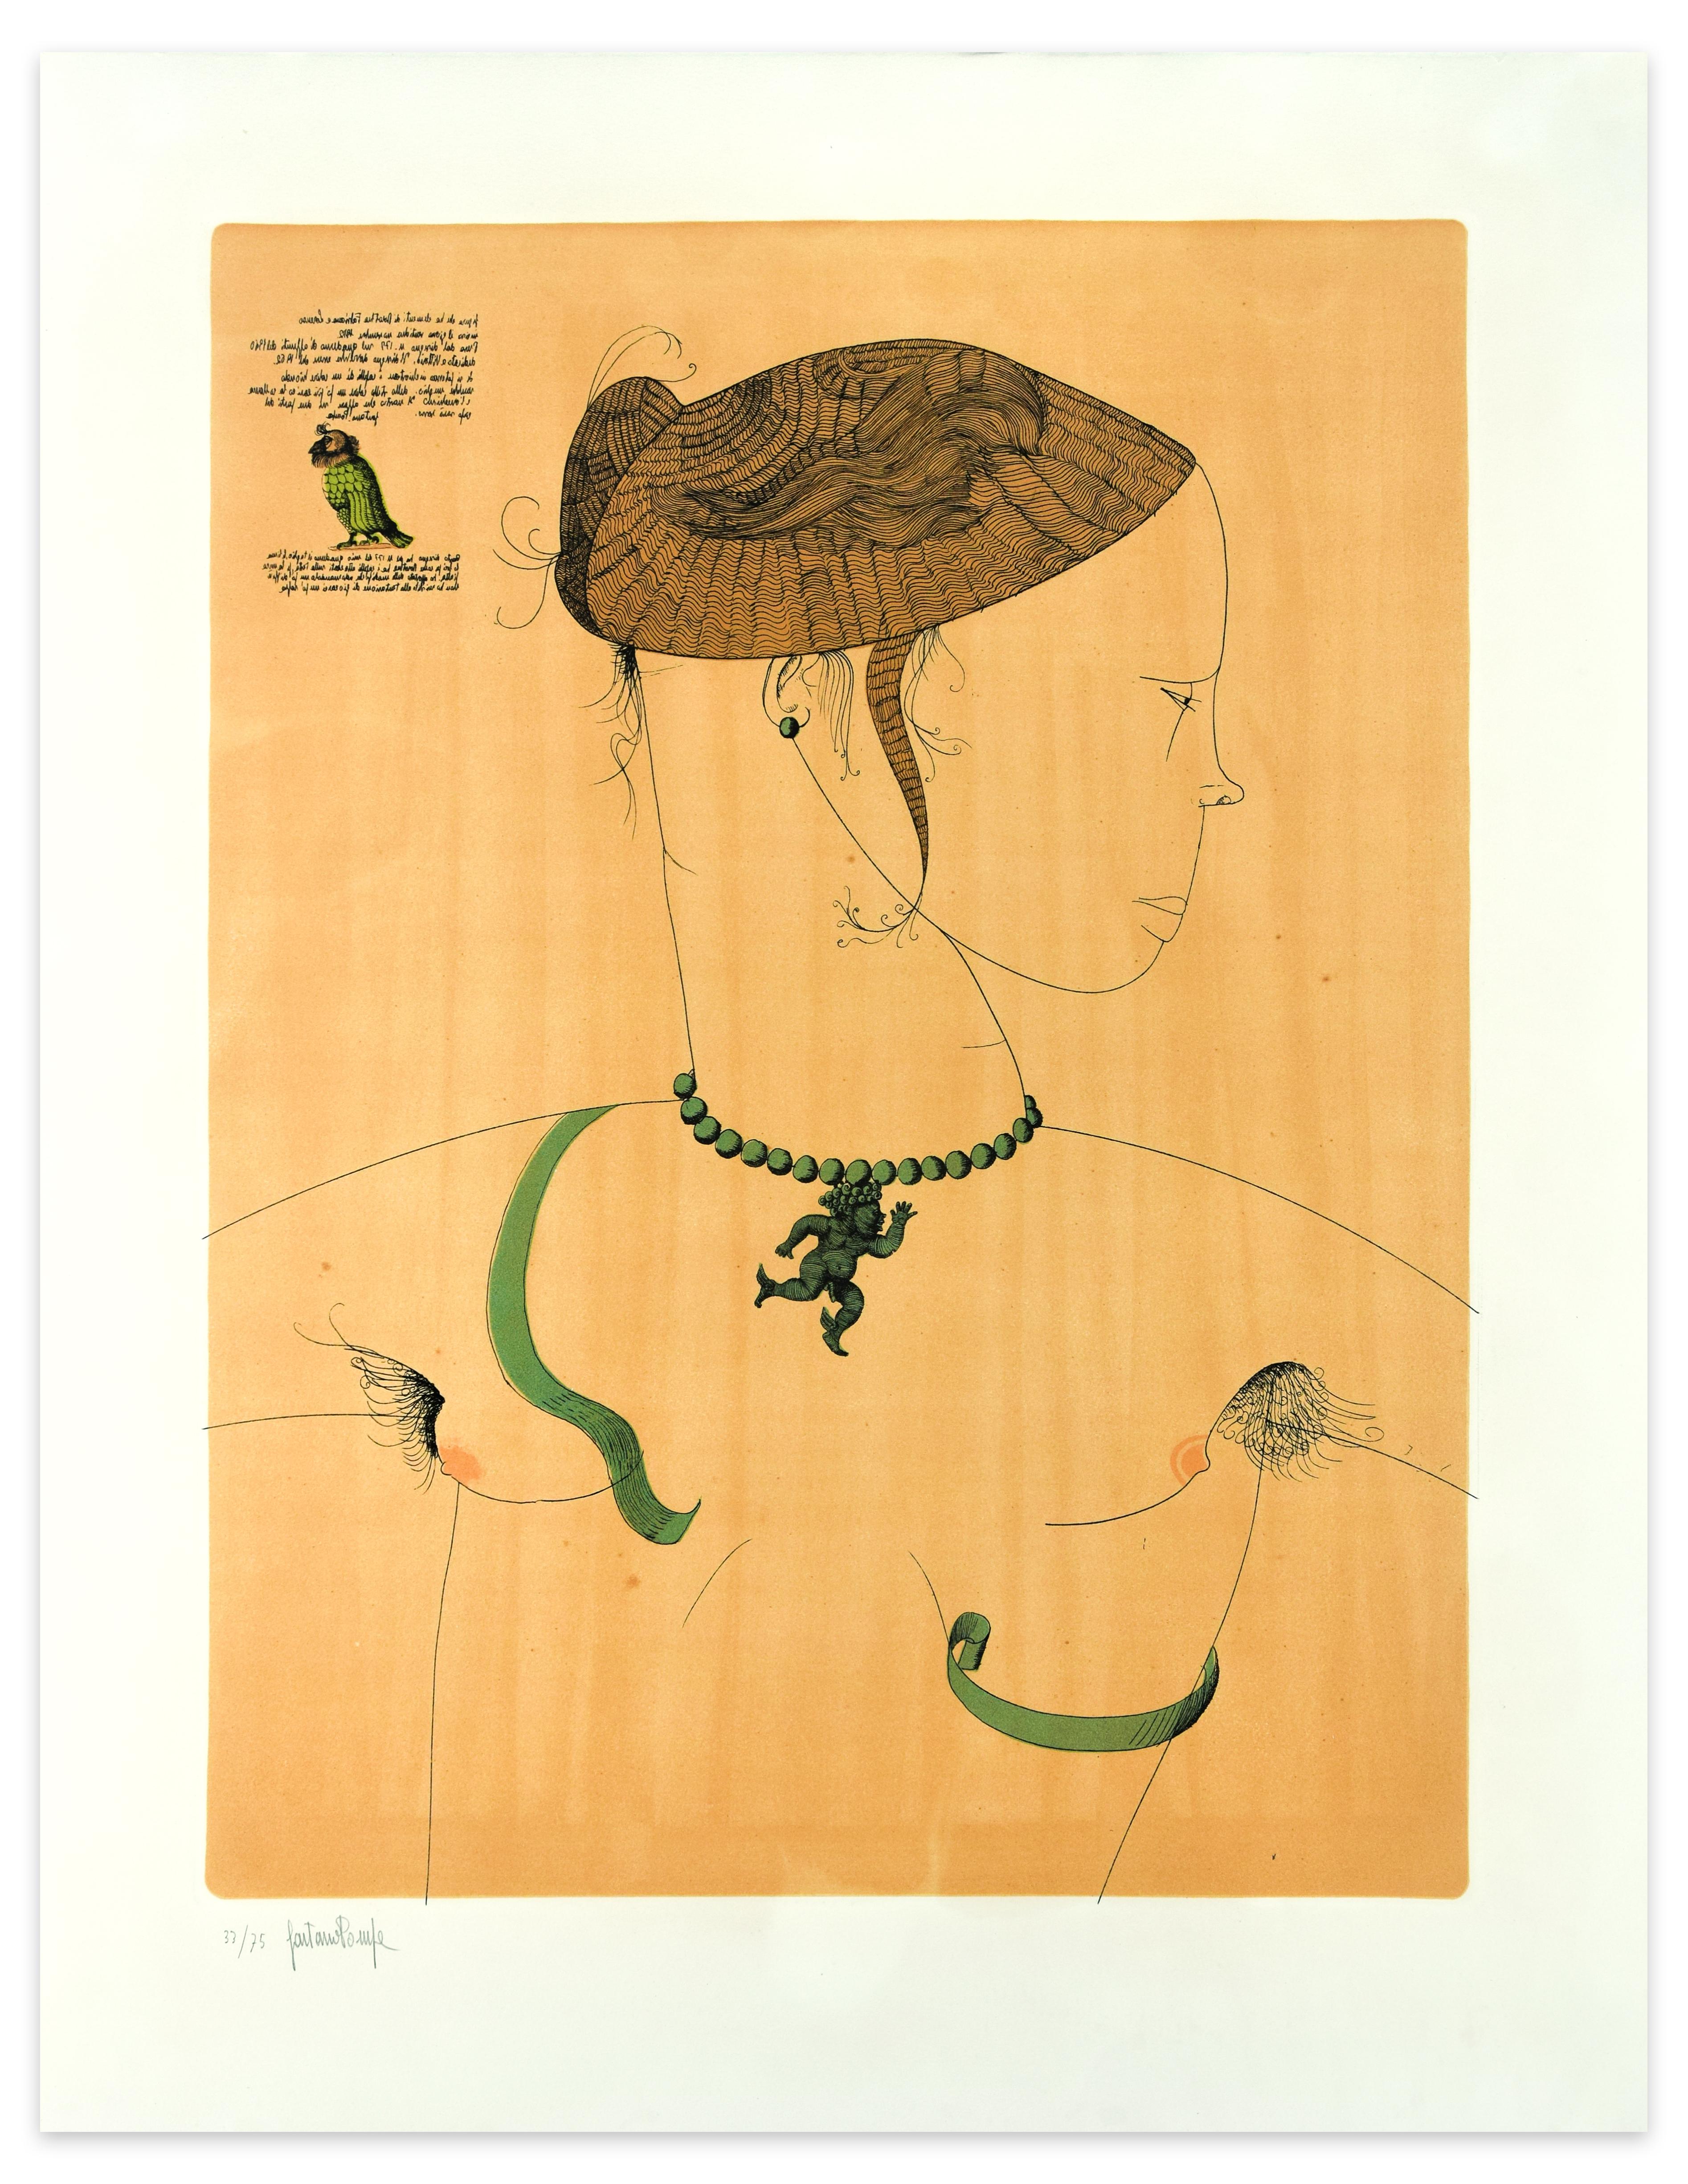 Dorothea e la biscia (Dorothée et le serpent) est une gravure originale en couleur, réalisée en 1963 par le maître contemporain italien, Gaetano Pompa. 

Dimensions de l'image : 64 x 49,5 cm.

Signé et numéroté à la main au crayon dans la marge